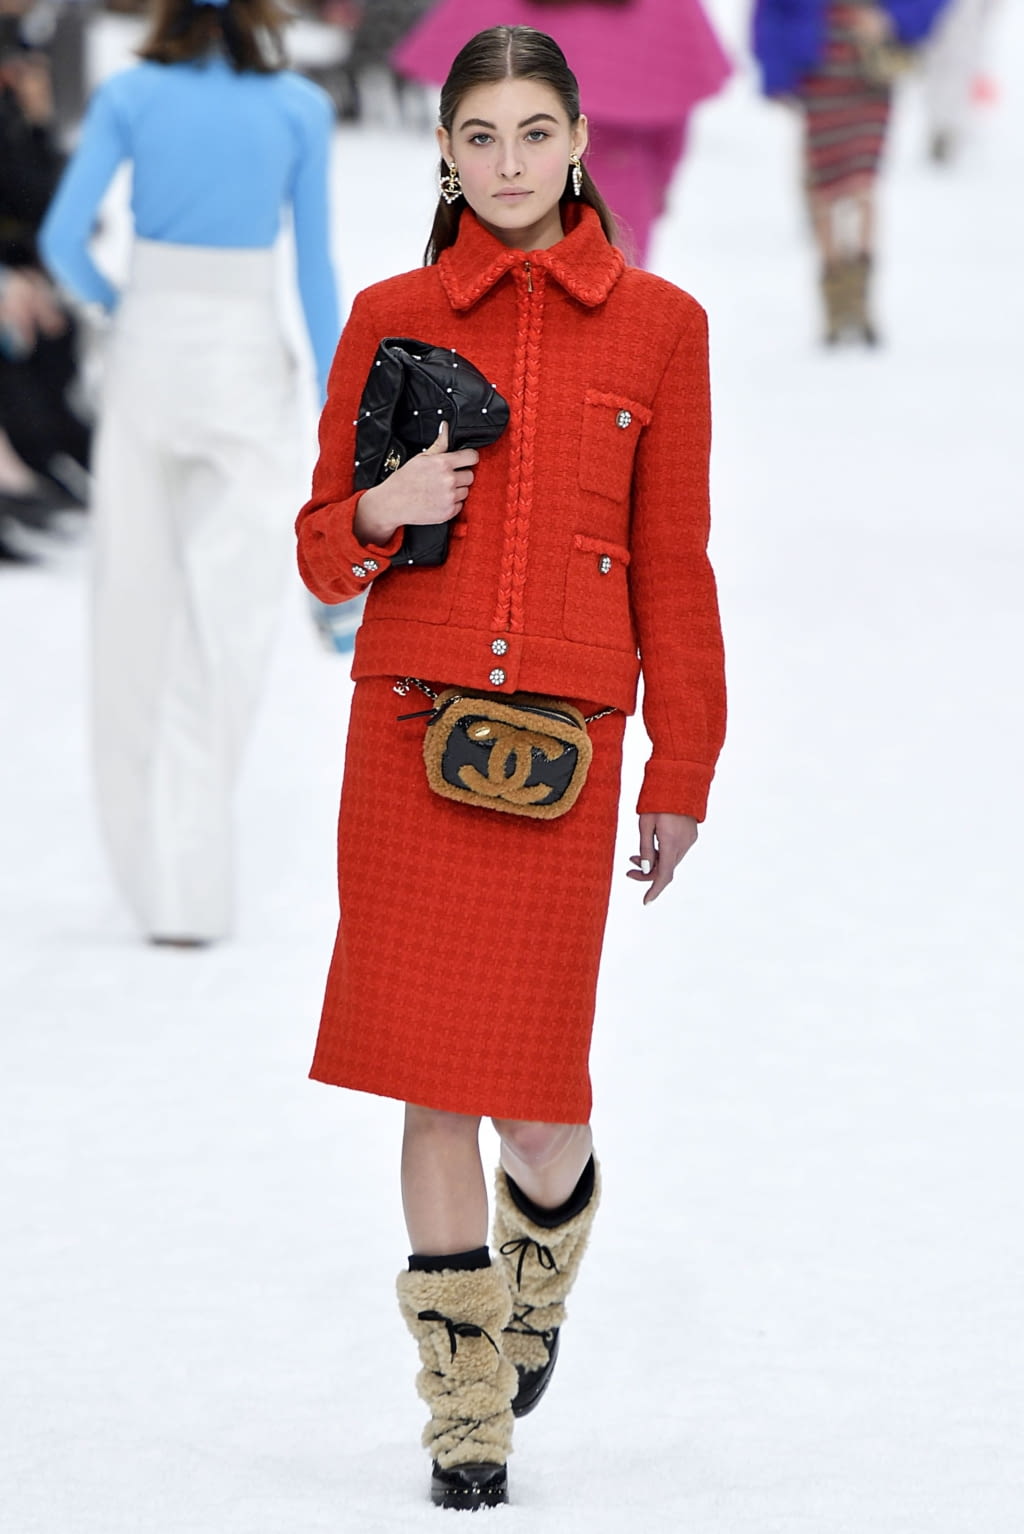 Chanel FW19 womenswear #44 - Tagwalk: The Fashion Search Engine